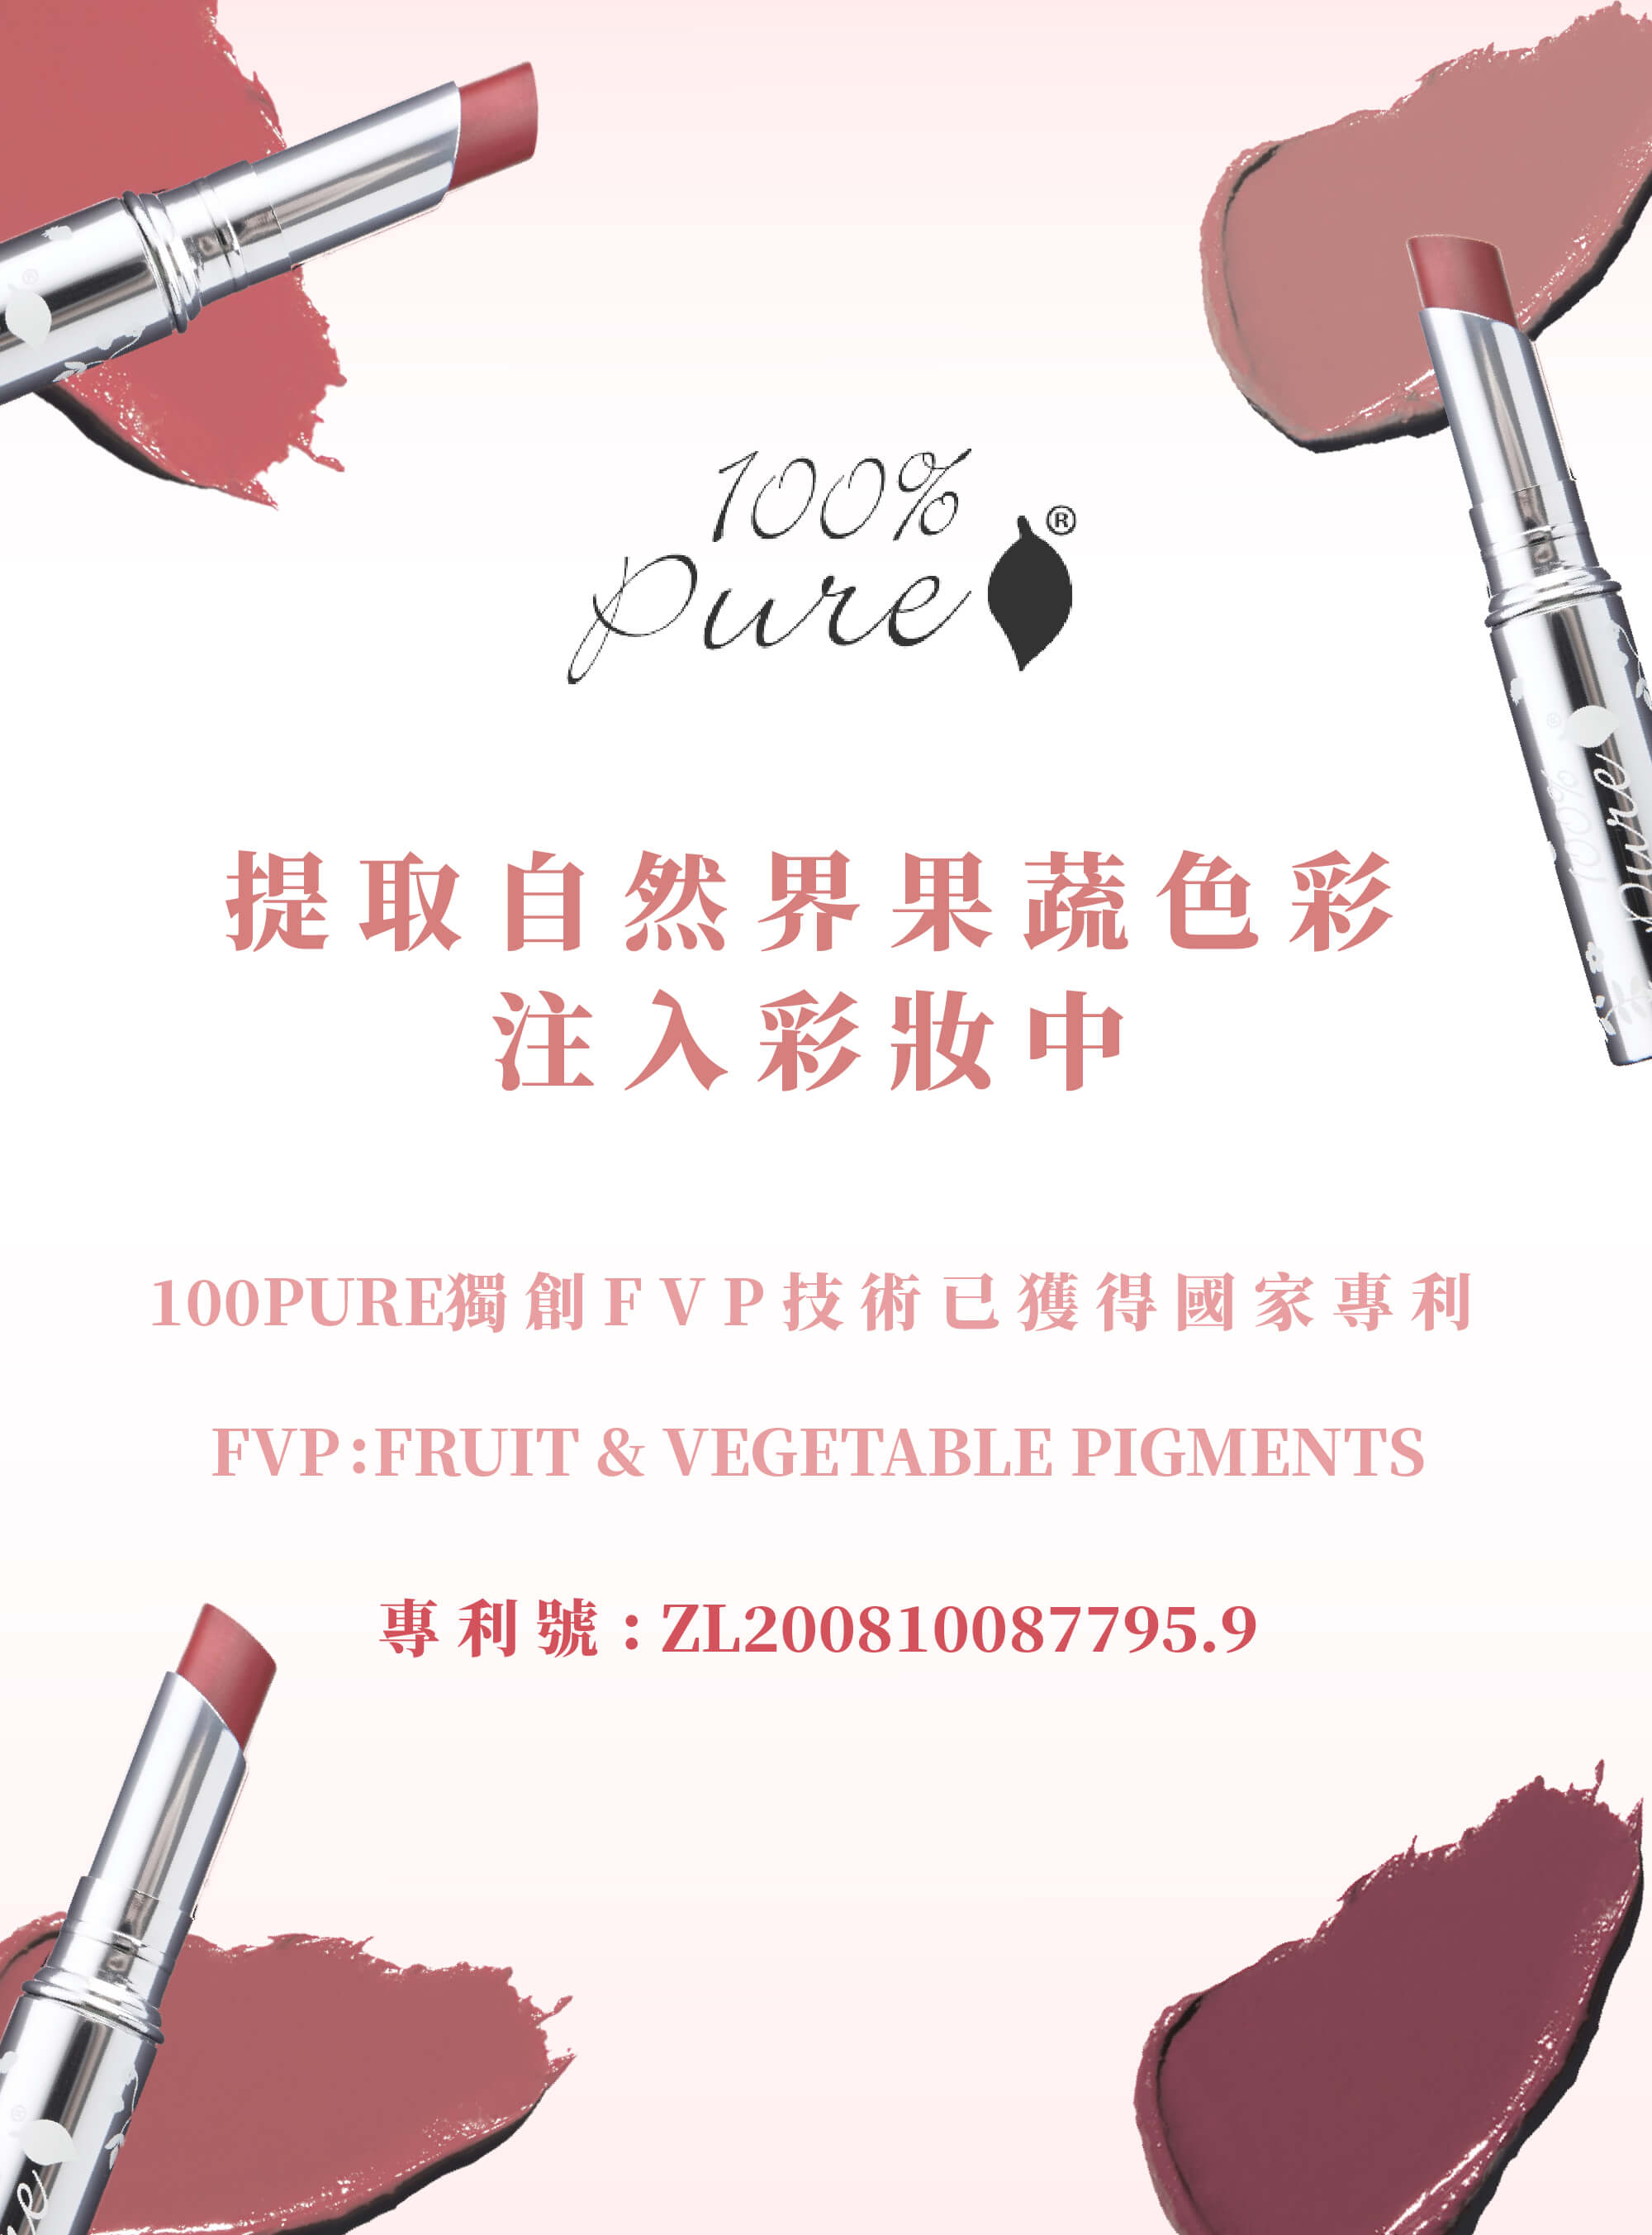 100% Pure 果妍萃取® 有色潤唇膏